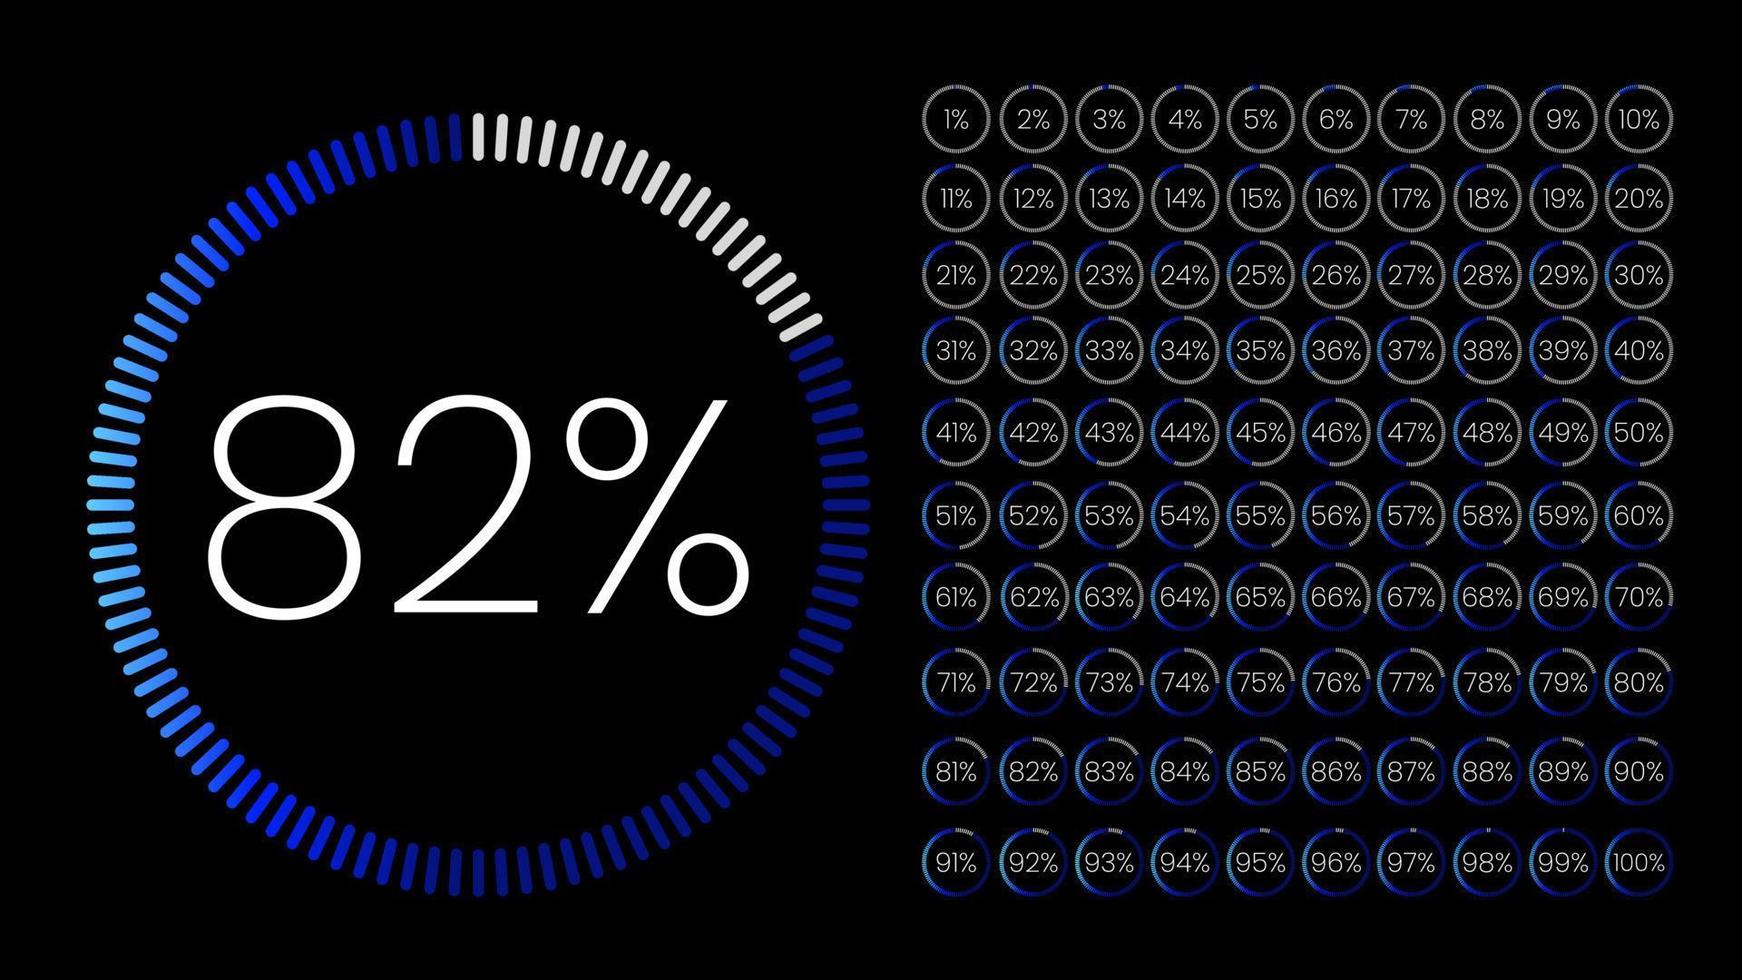 conjunto de medidores de porcentaje de círculo de 0 a 100 para infografía, diseño de interfaz de usuario ui. gráfico circular degradado descargando el progreso de azul claro a azul oscuro en fondo negro. vector de diagrama de círculo.